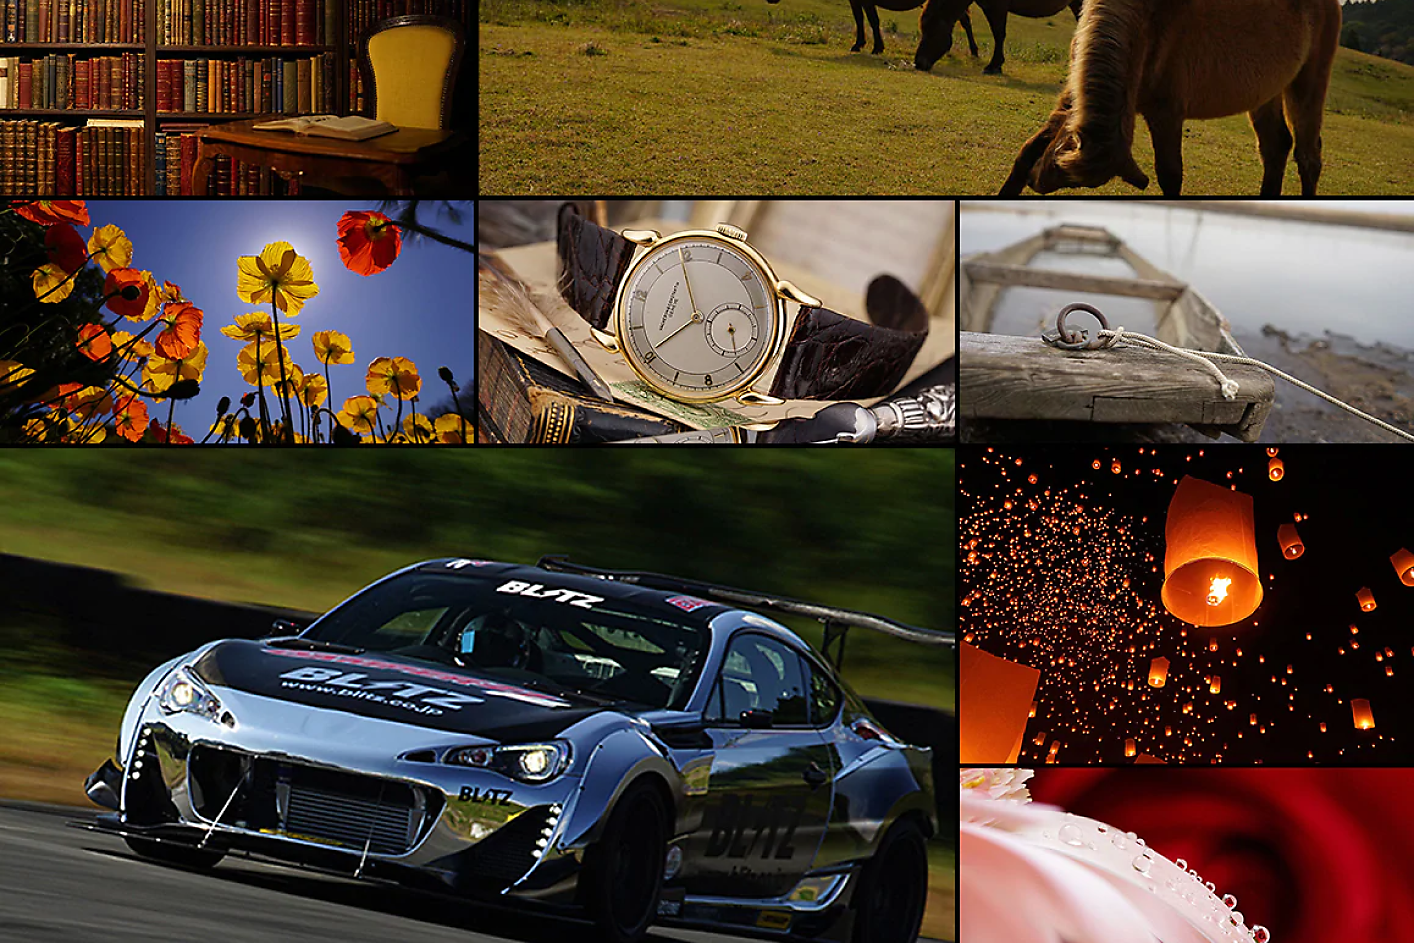 Šareni kolaž od osam slika, uključujući trkaći automobil, konja, sat i cvijeće